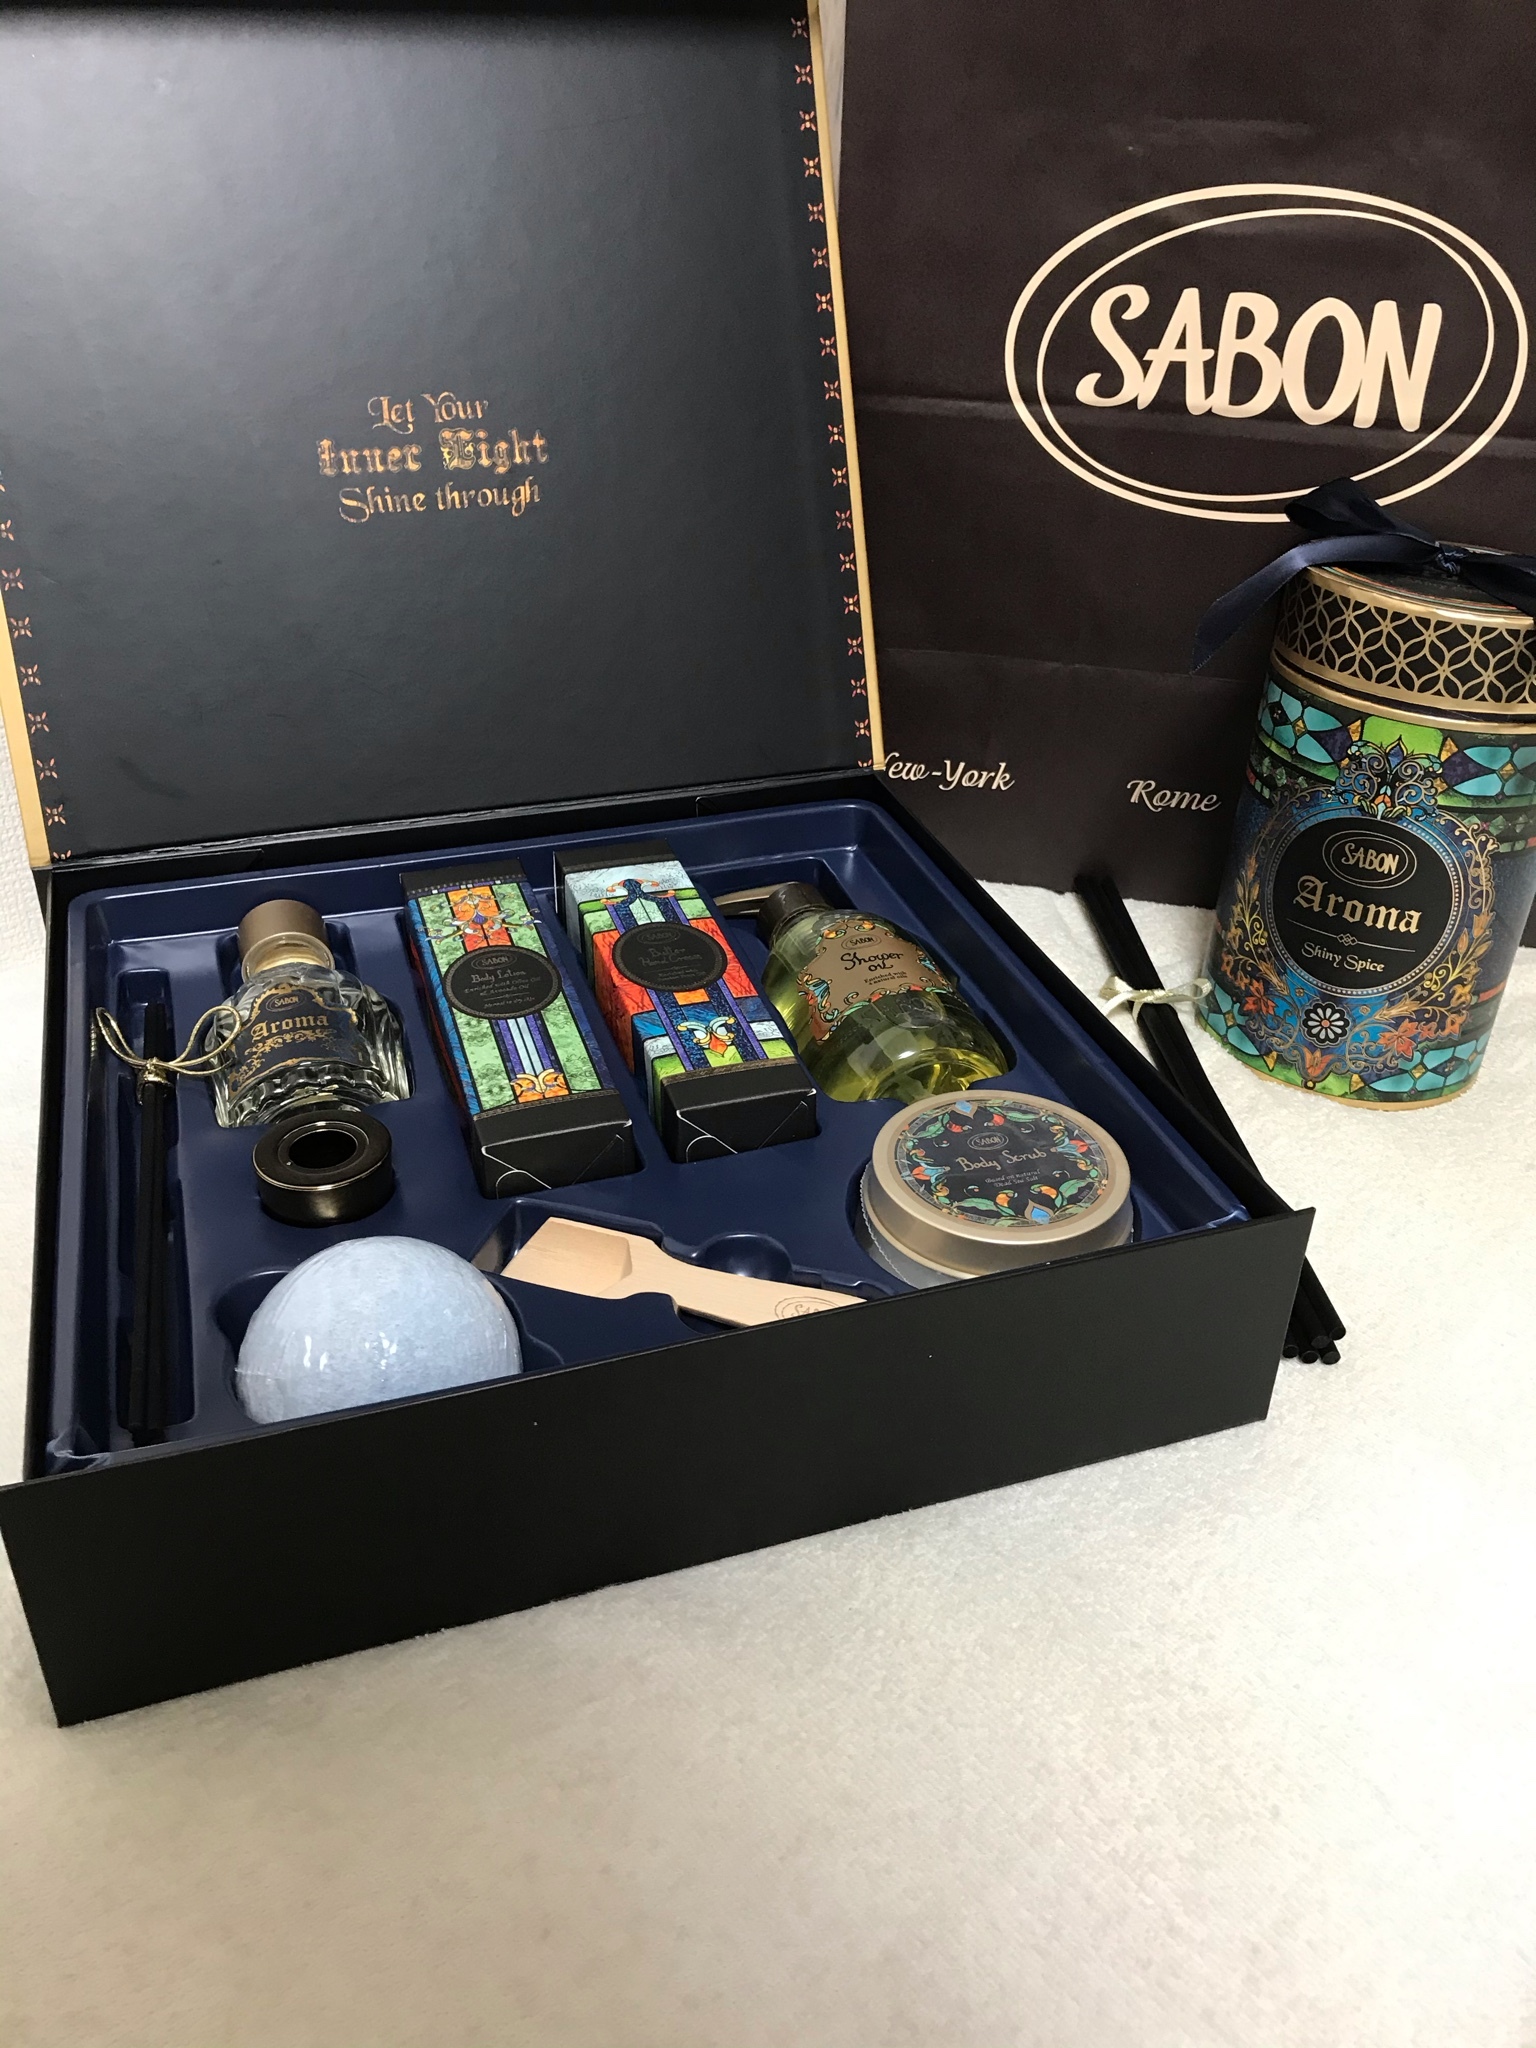 SABON(サボン) / ホリデーコレクション トータルコフレの公式商品情報 